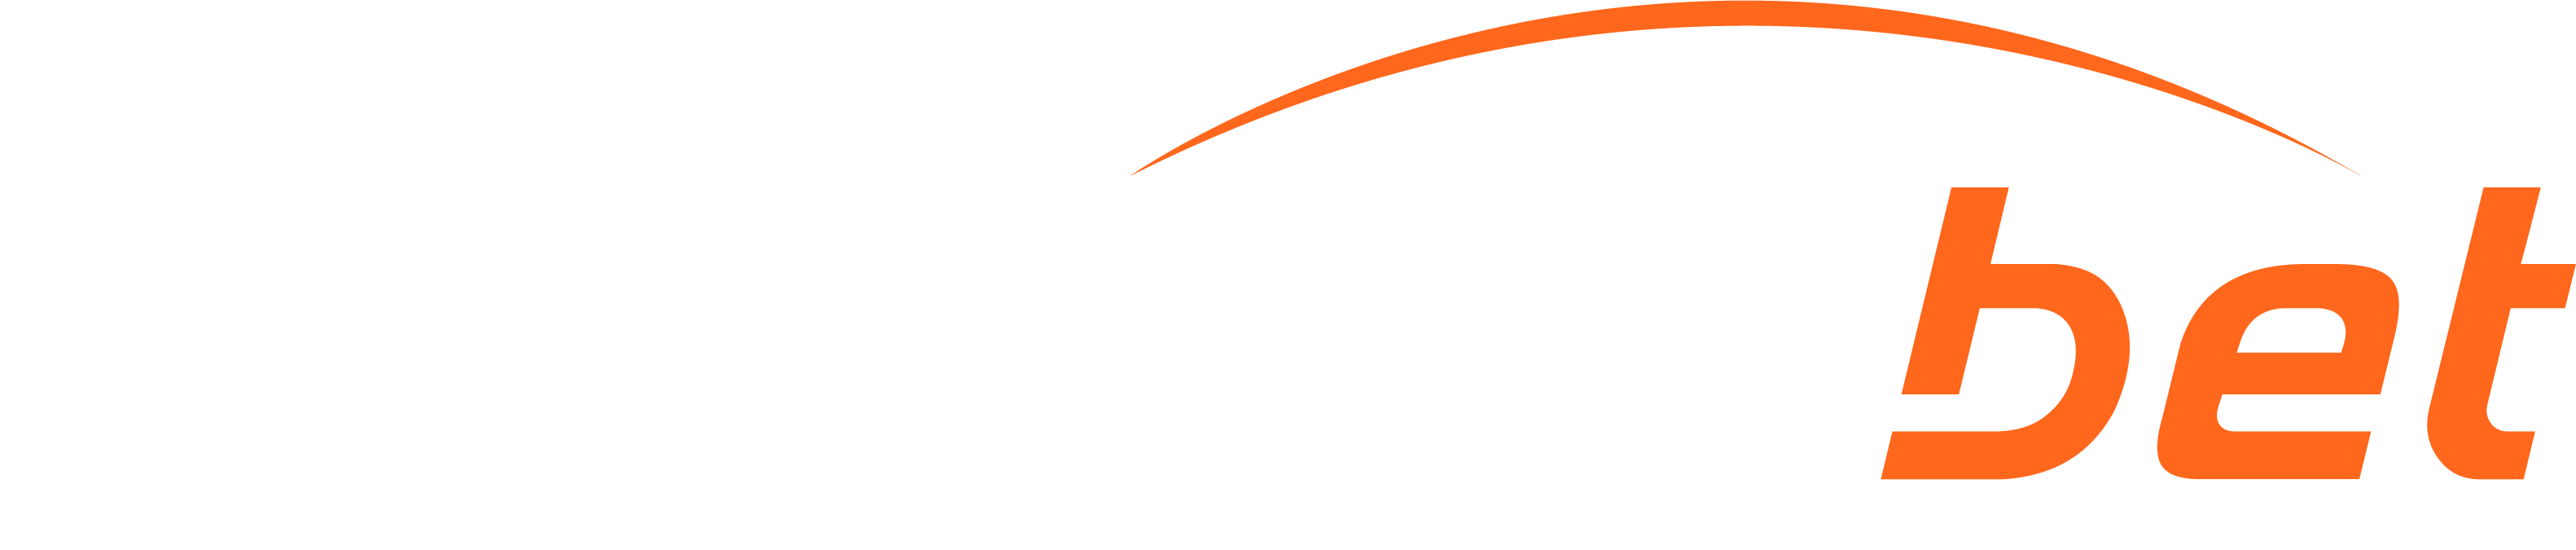 FantasticBet Sport logo